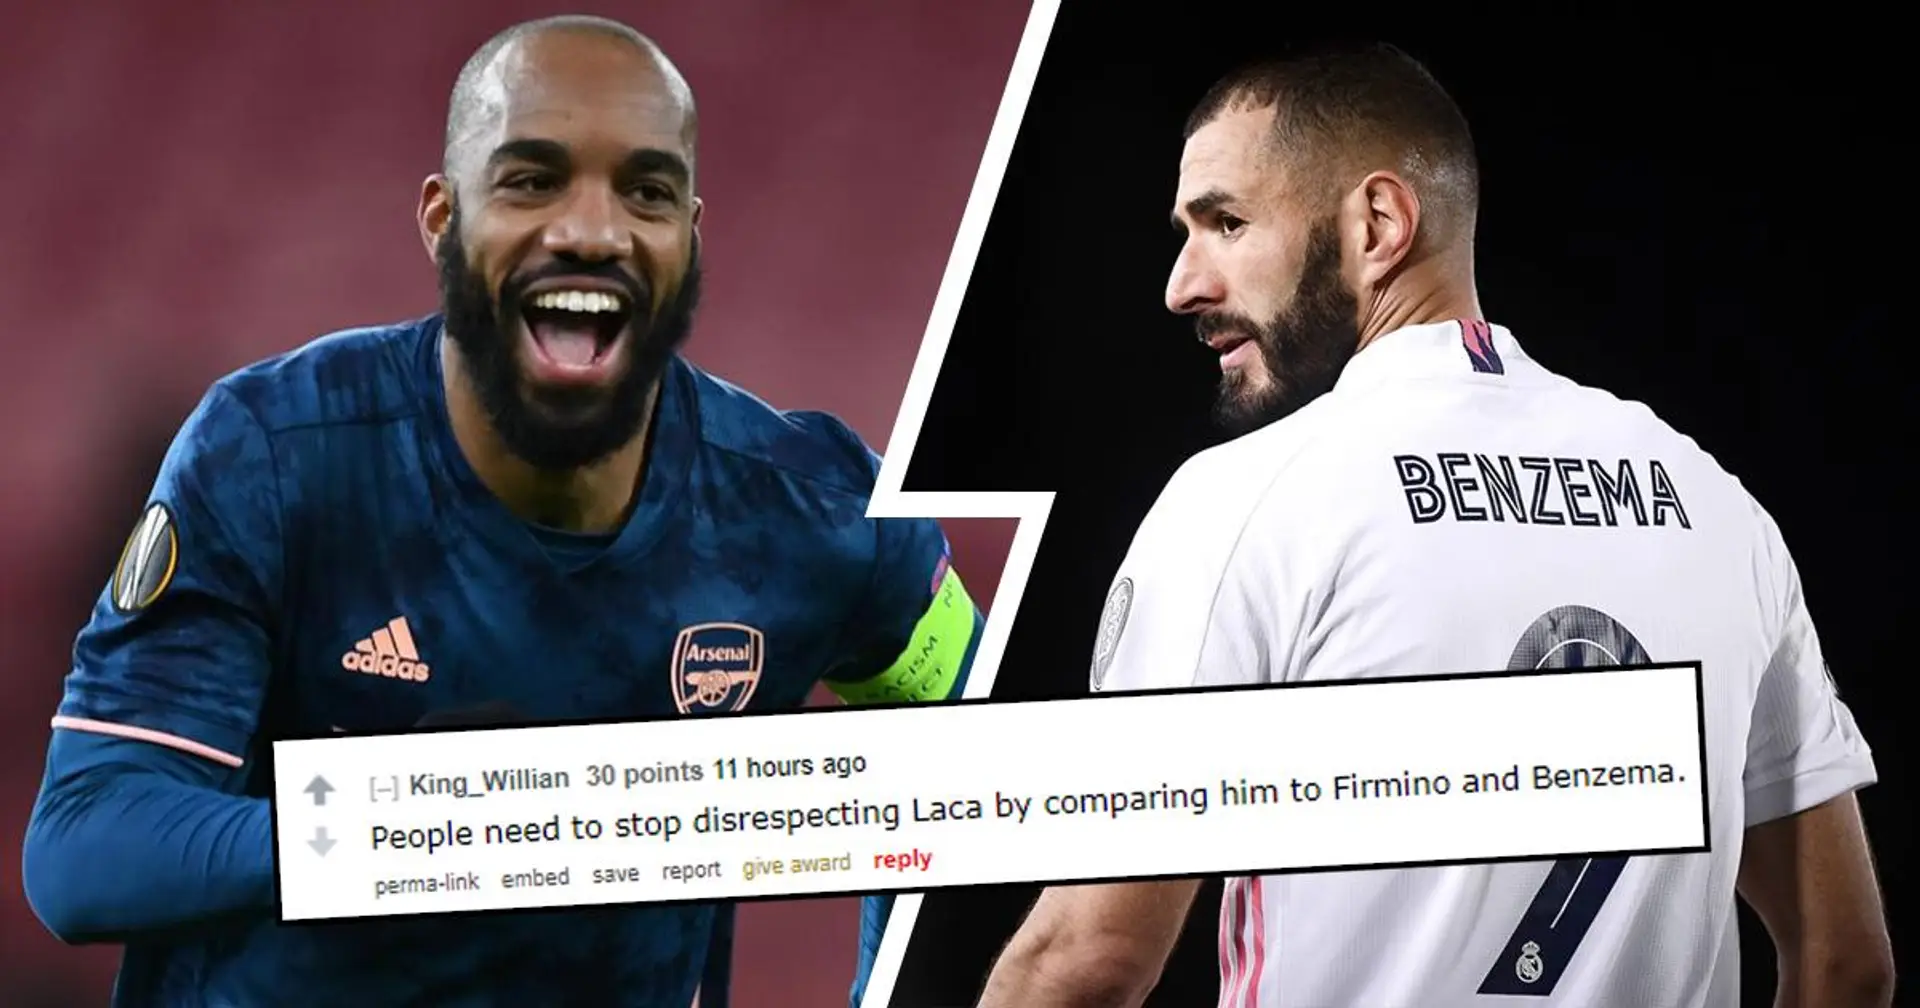 "Arrêtez de manquer de respect à Laca en le comparant à Benzema": les fans d'Arsenal affirment que Lacazette est meilleur que Karim - mais 3 faits leur prouvent le contraire